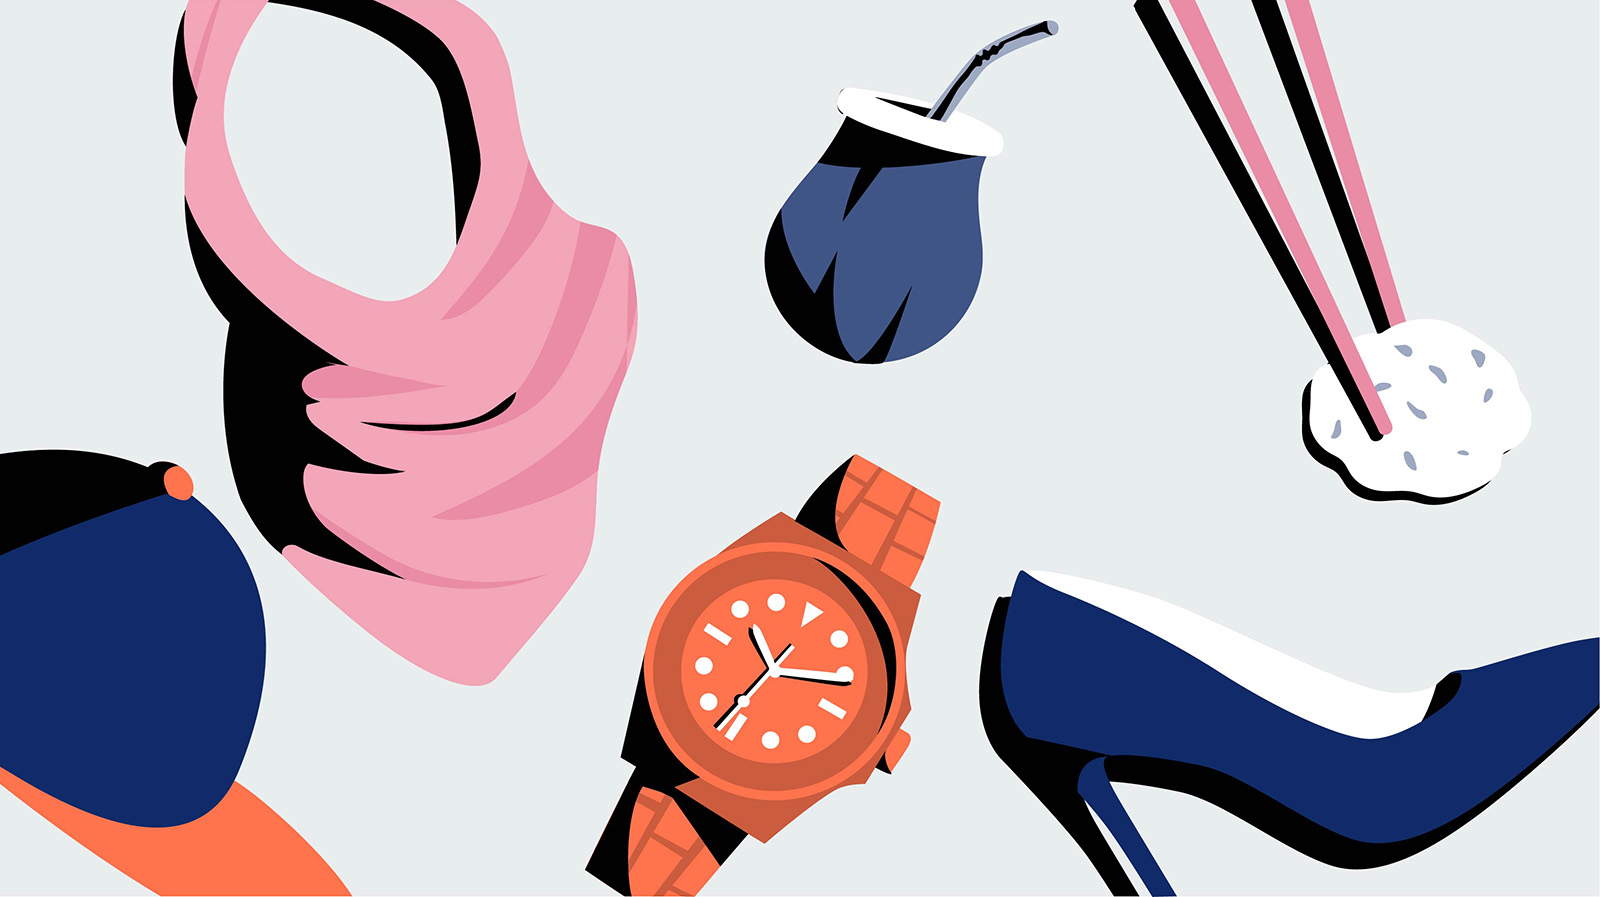 Illustration von Mütze, Kopftuch, Armbanduhr, High Heel und Sushi-Stäbchen als Sinnbild für Diversität und LGTBQ+